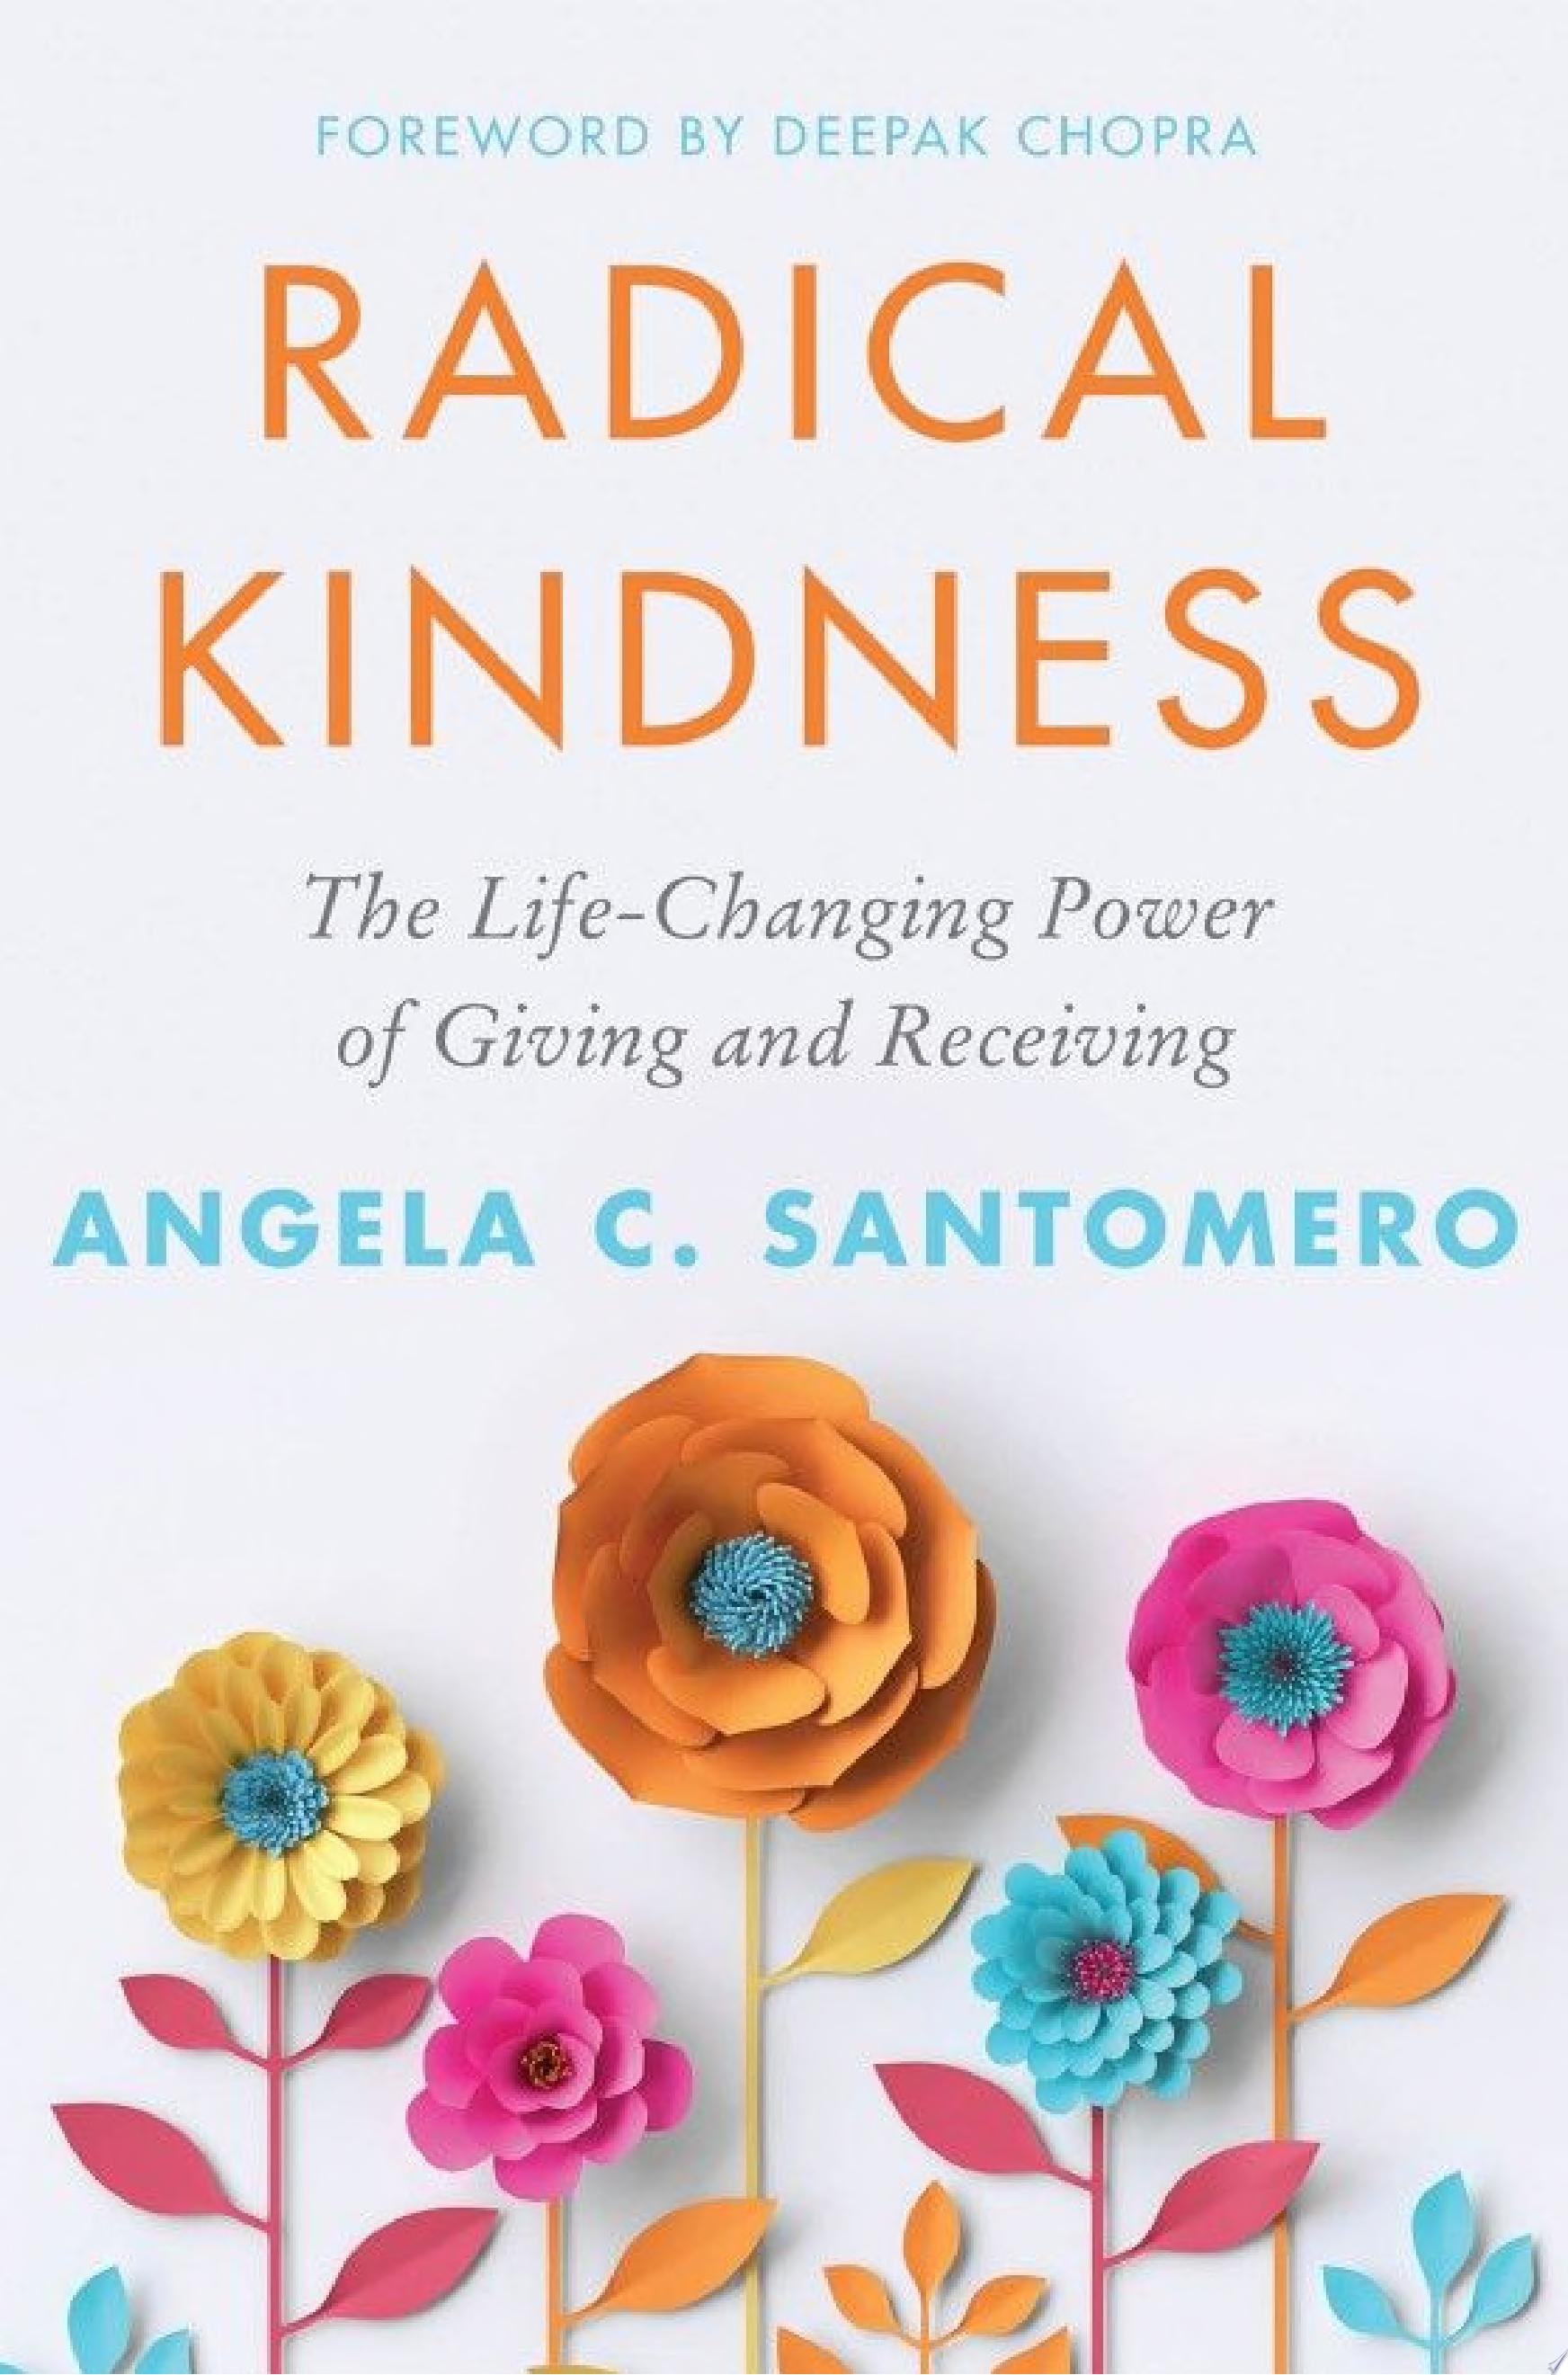 Image for "Radical Kindness"